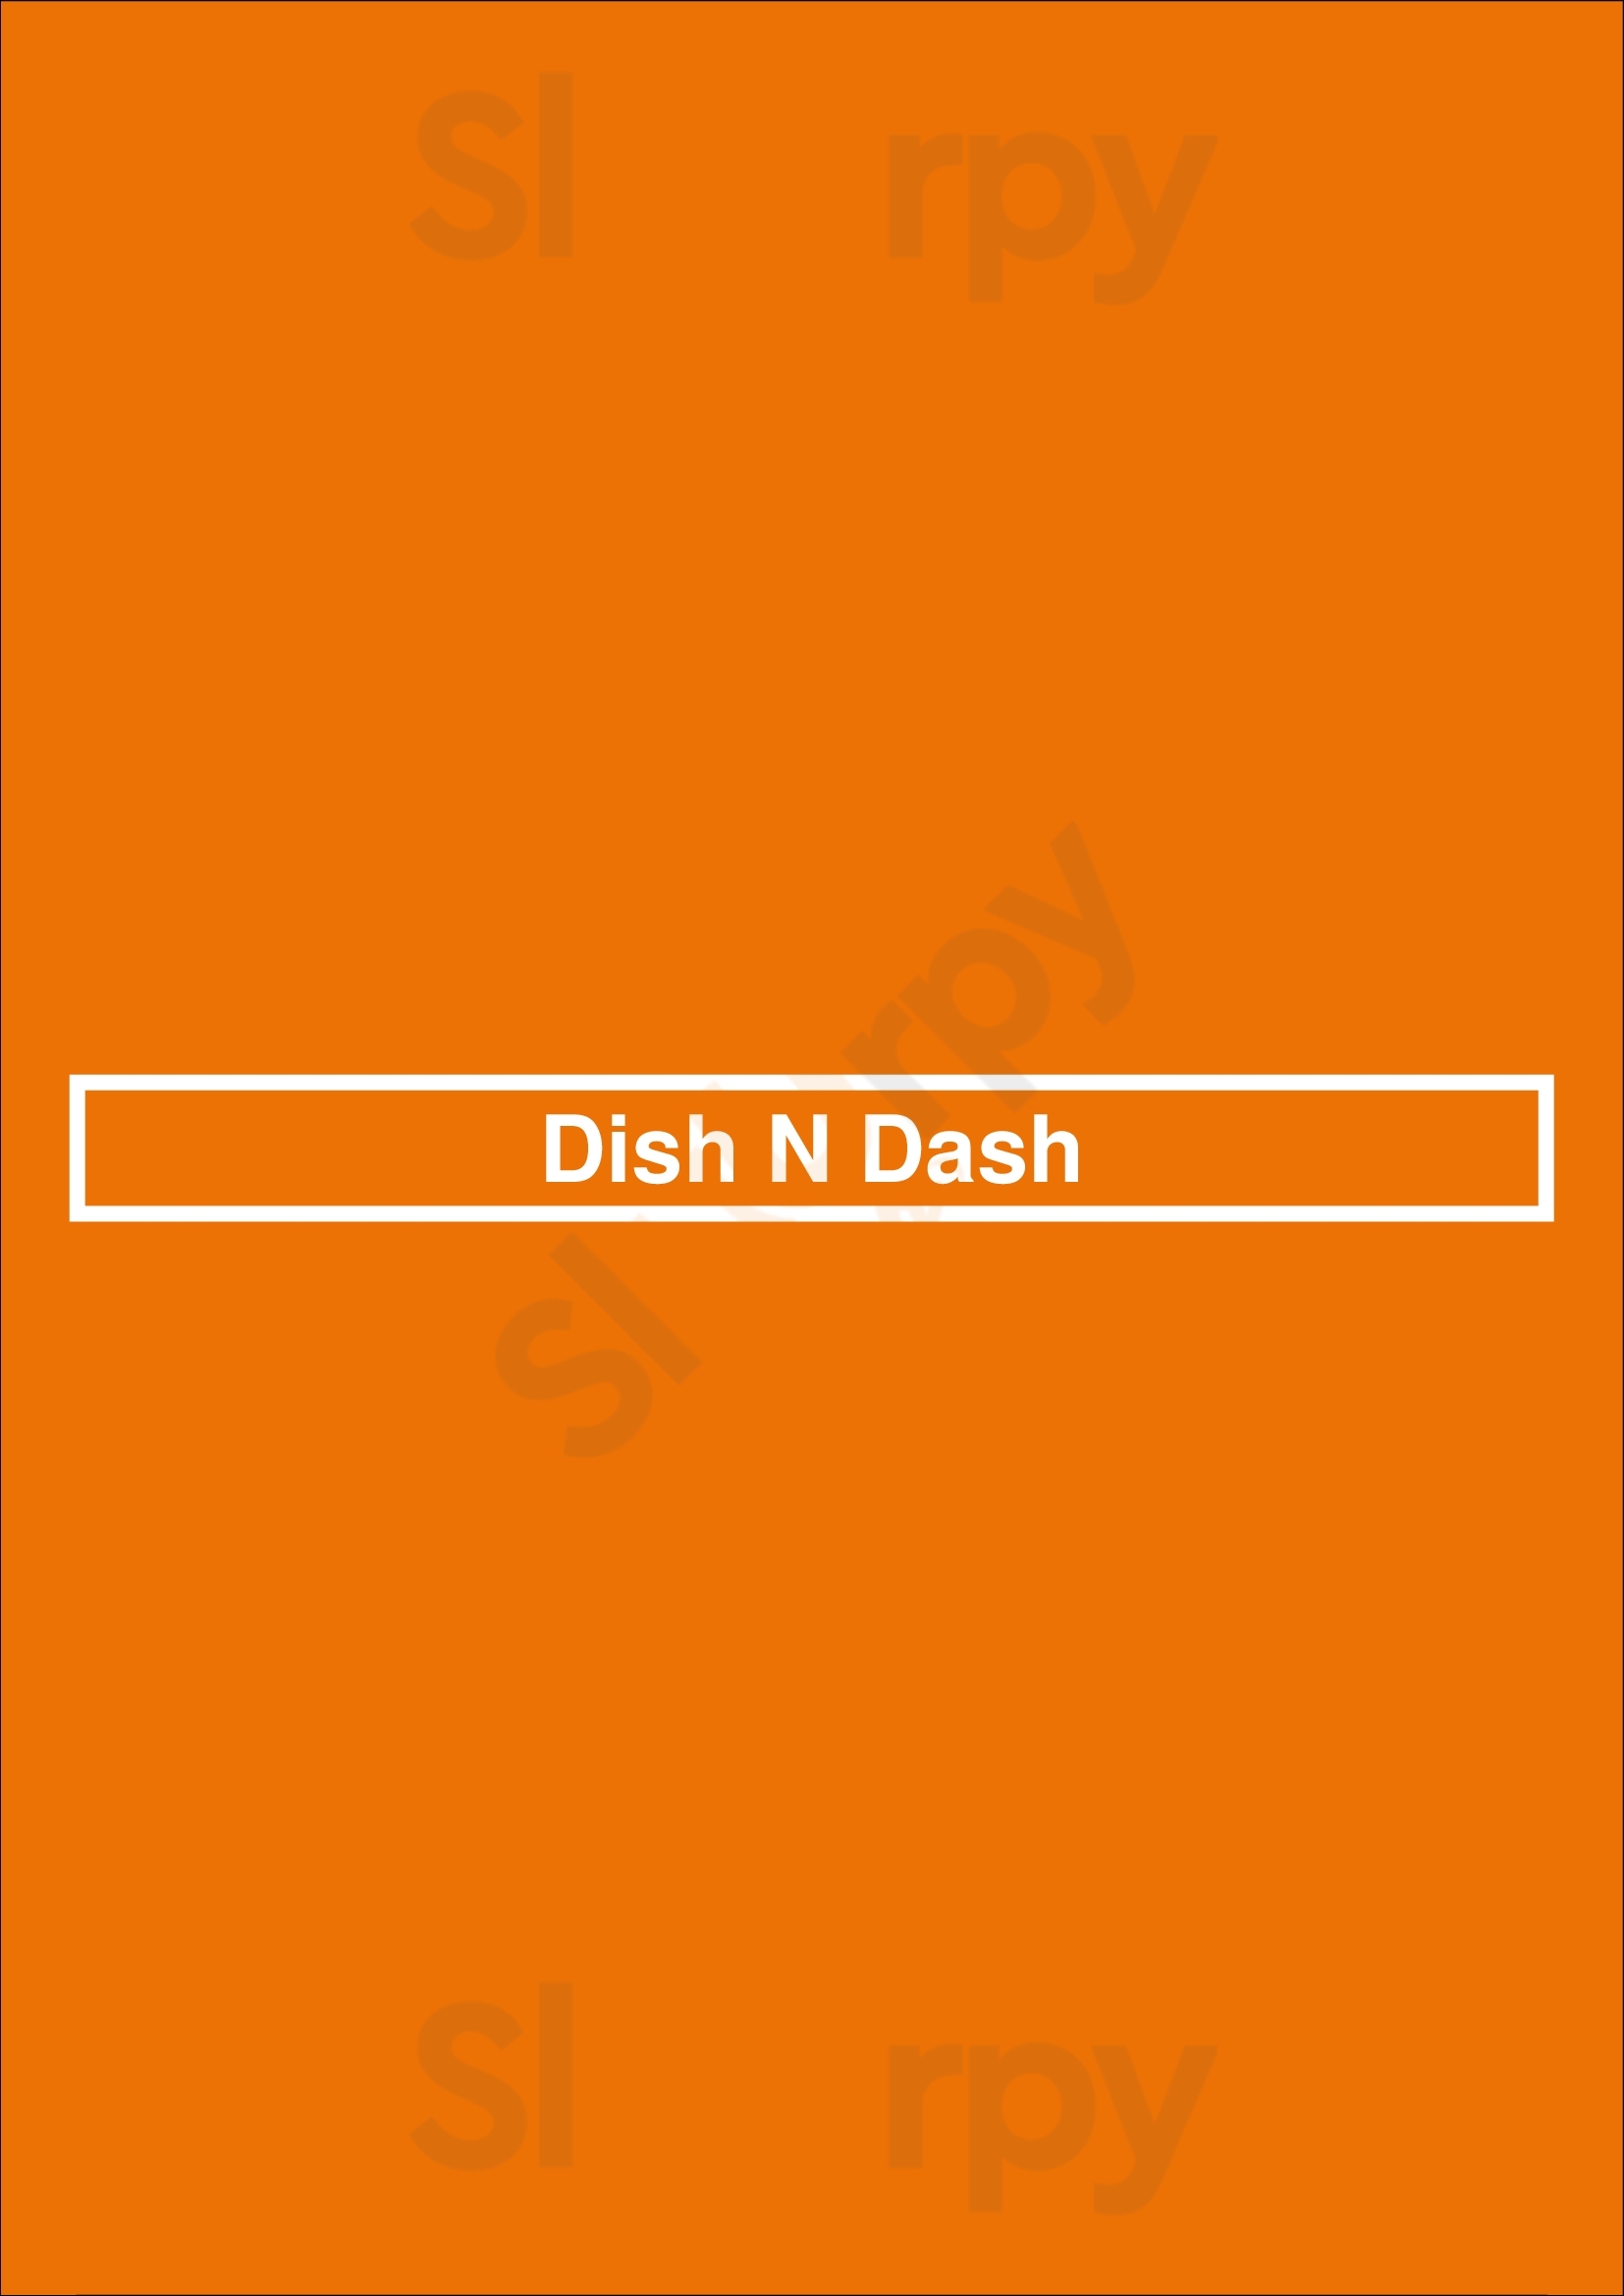 Dish N' Dash San Jose Menu - 1